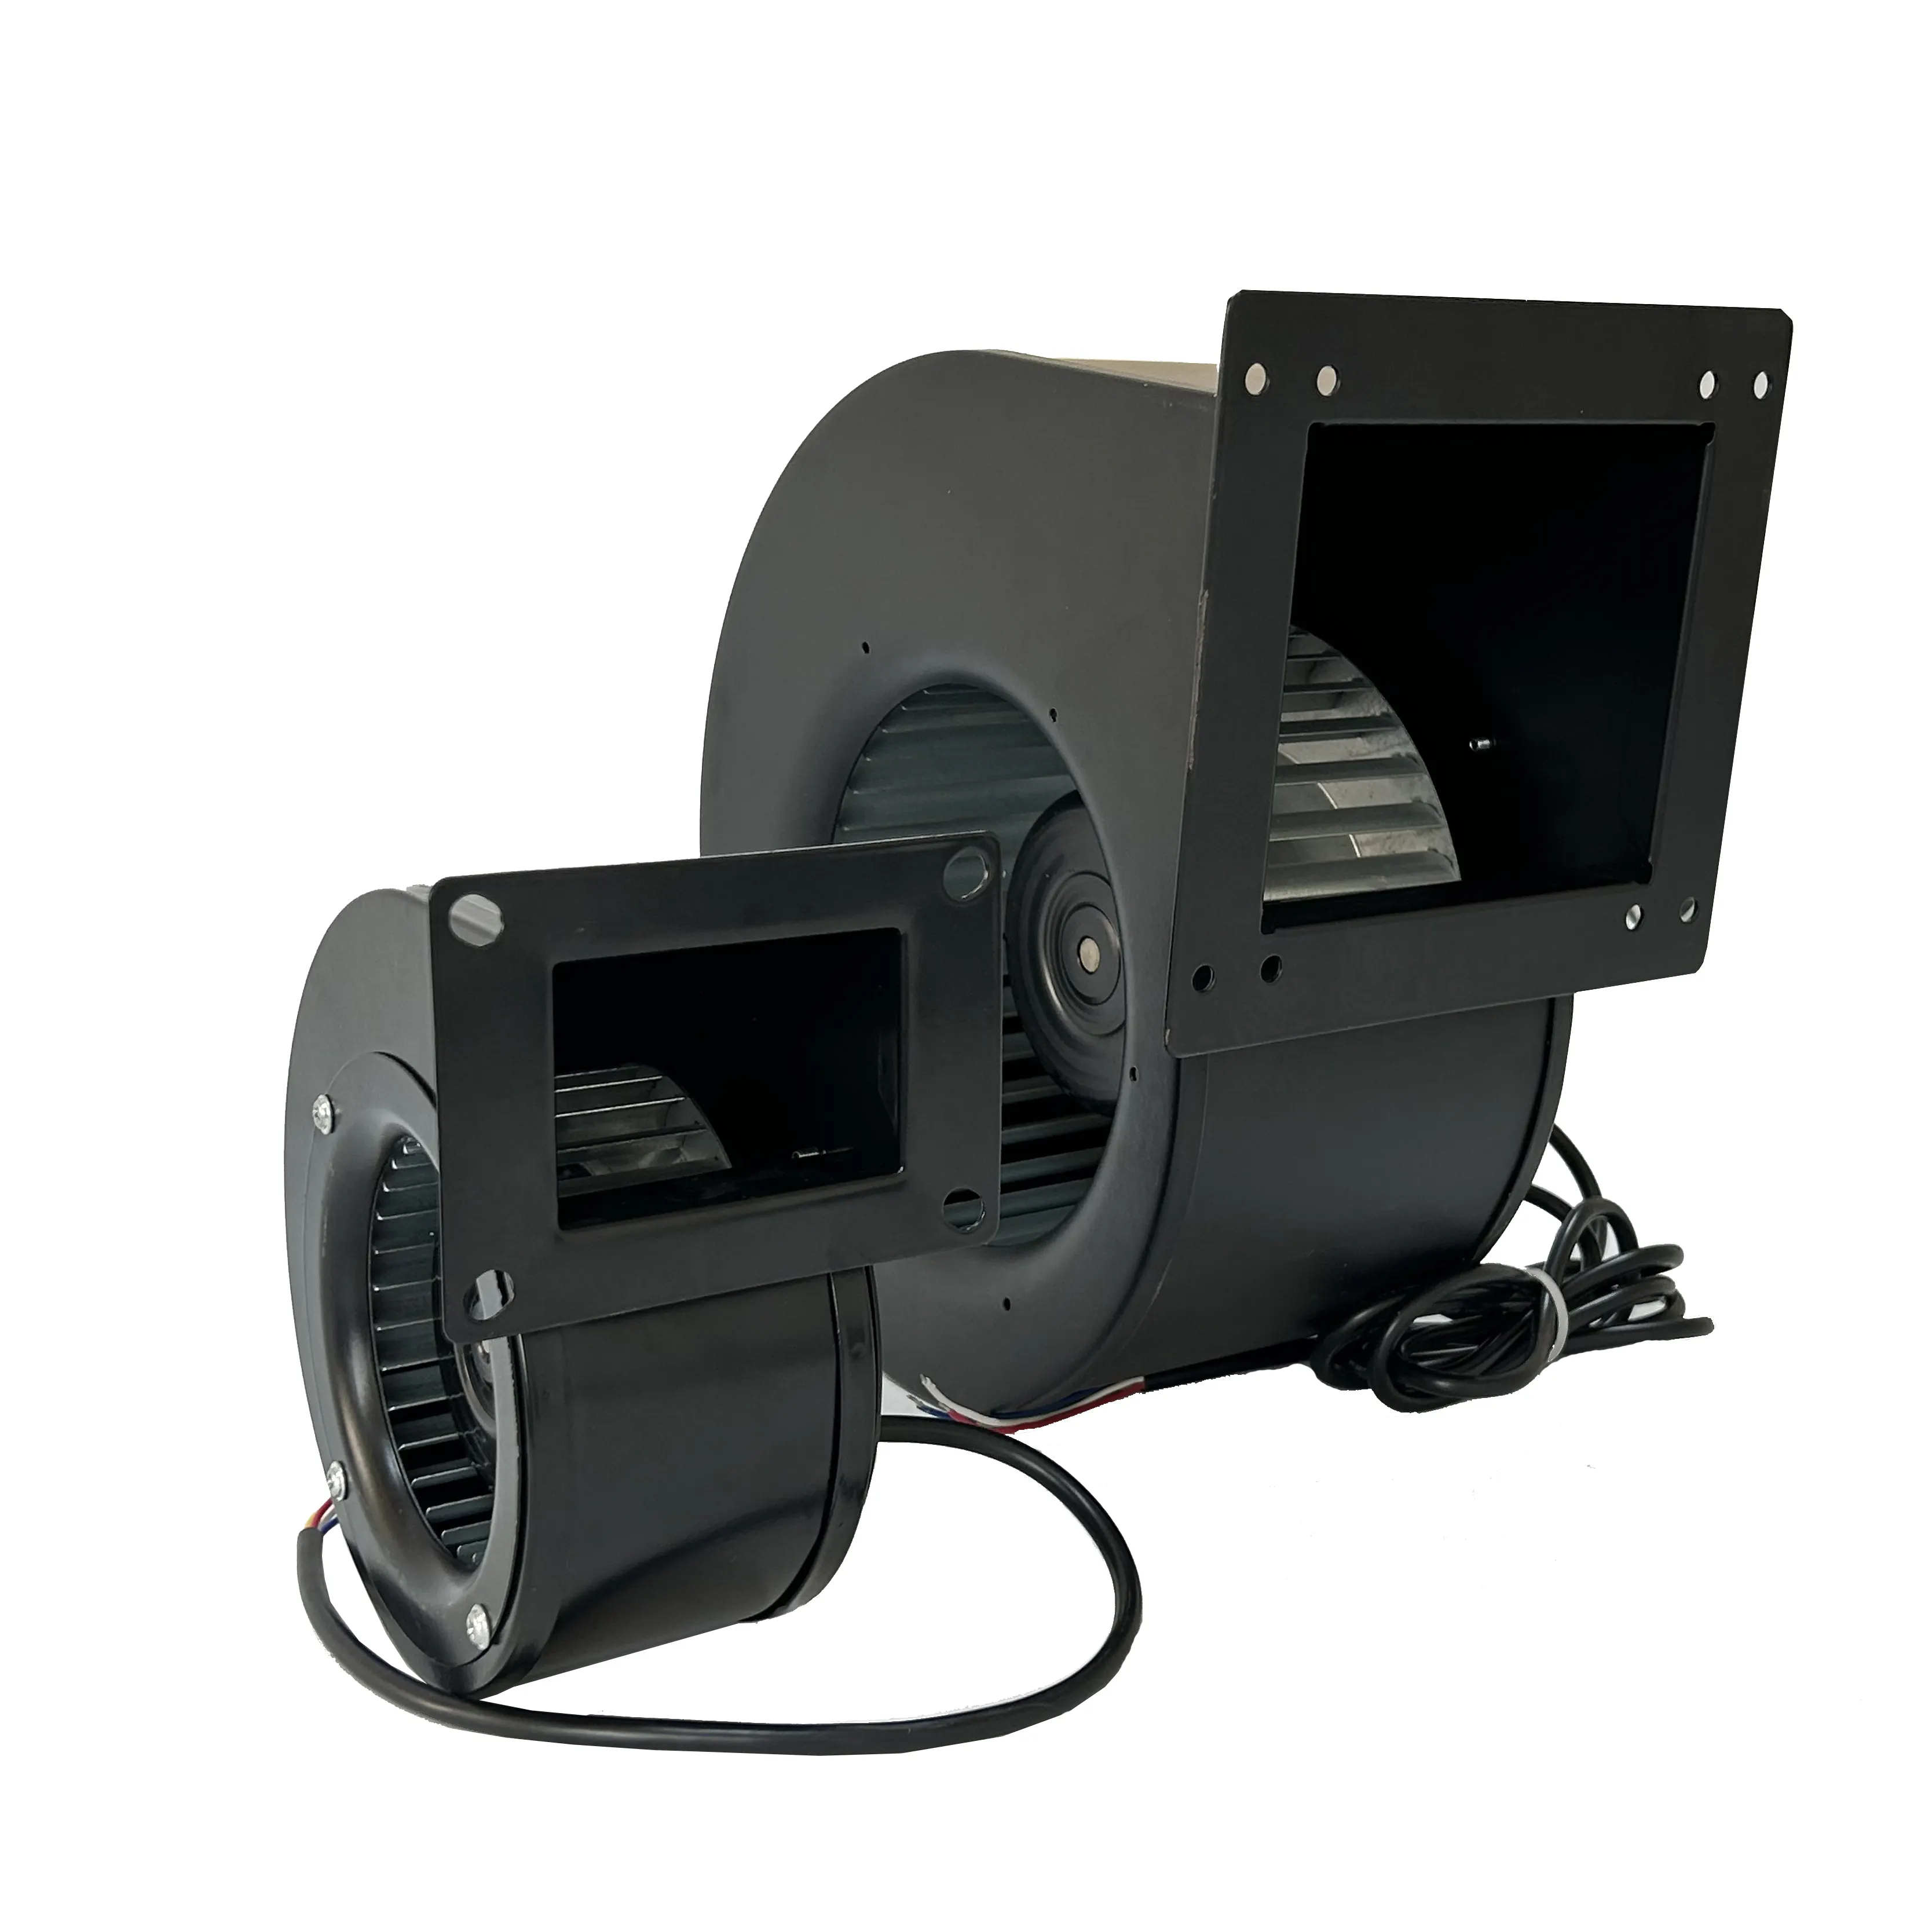 Ventilatore di scarico singolo ingresso HVAC ventilatore di ventilazione 120mm ventilatore centrifugo con Controller